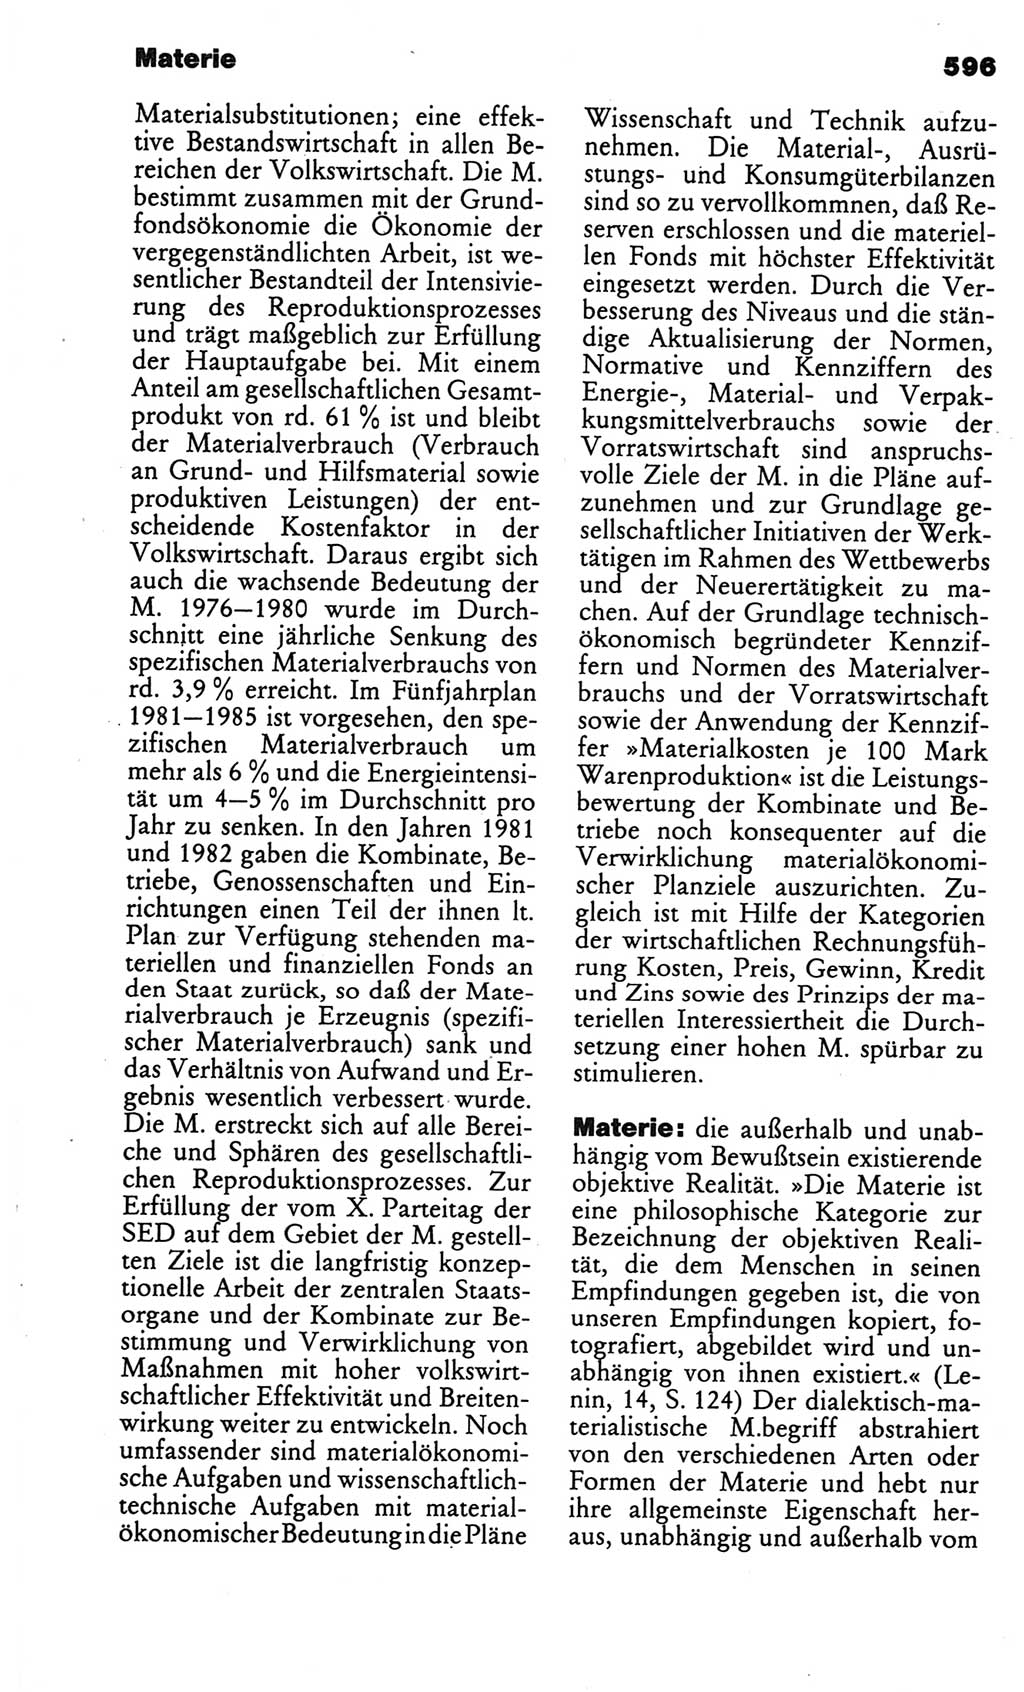 Kleines politisches Wörterbuch [Deutsche Demokratische Republik (DDR)] 1986, Seite 596 (Kl. pol. Wb. DDR 1986, S. 596)